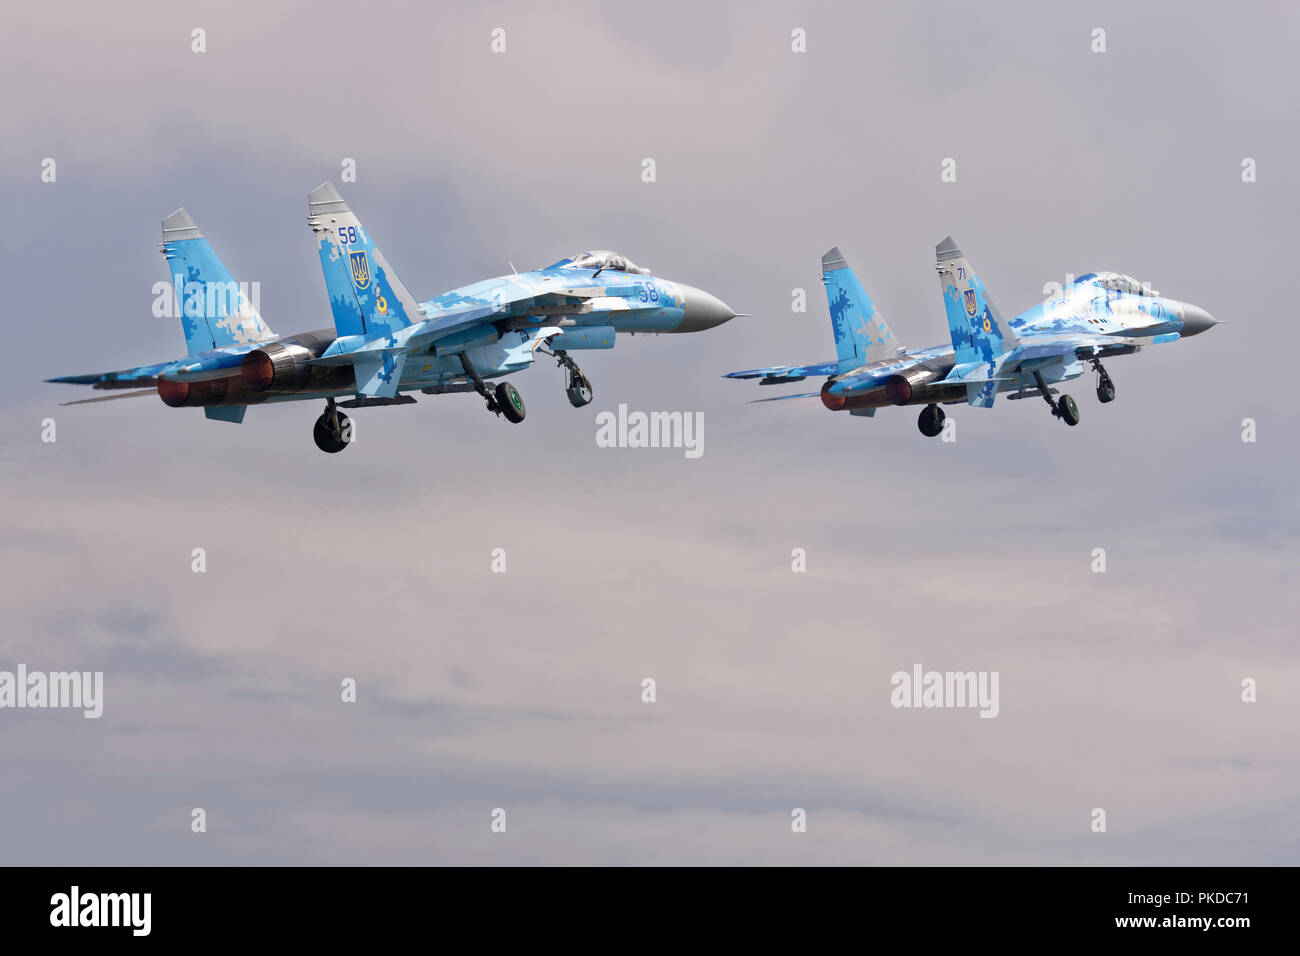 Armée de l'air ukrainienne deux Sukhoi Su-27 la supériorité aérienne des chasseurs à partir RAF Fairford après avoir assisté à la Royal International Air Tattoo Banque D'Images